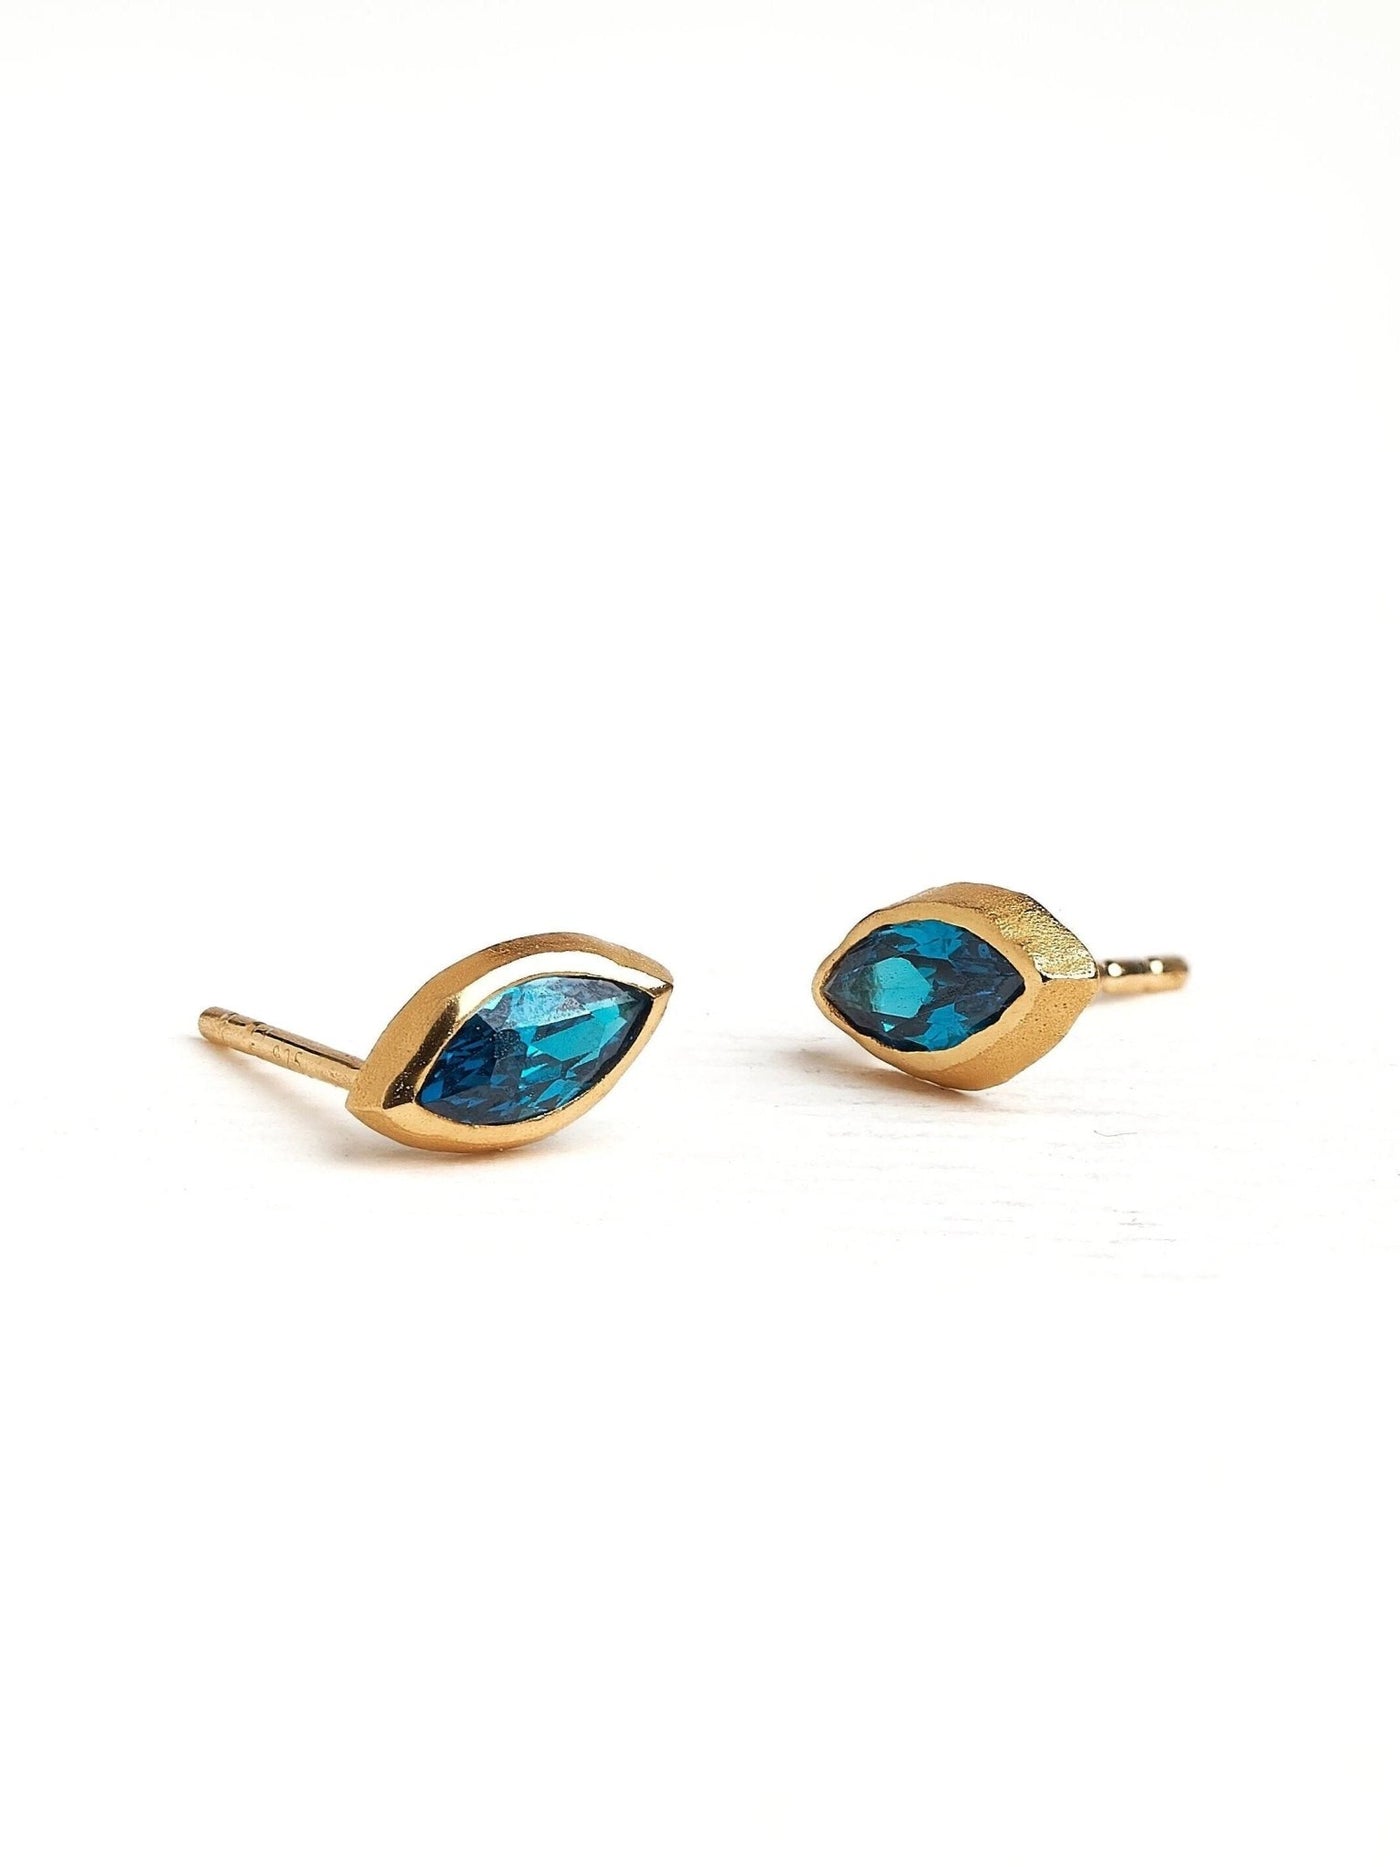 Leota Marquise Blue Topaz Gold Earrings - Blue Topaz Zirconbest selling itemsbirthstone earringsLunai Jewelry